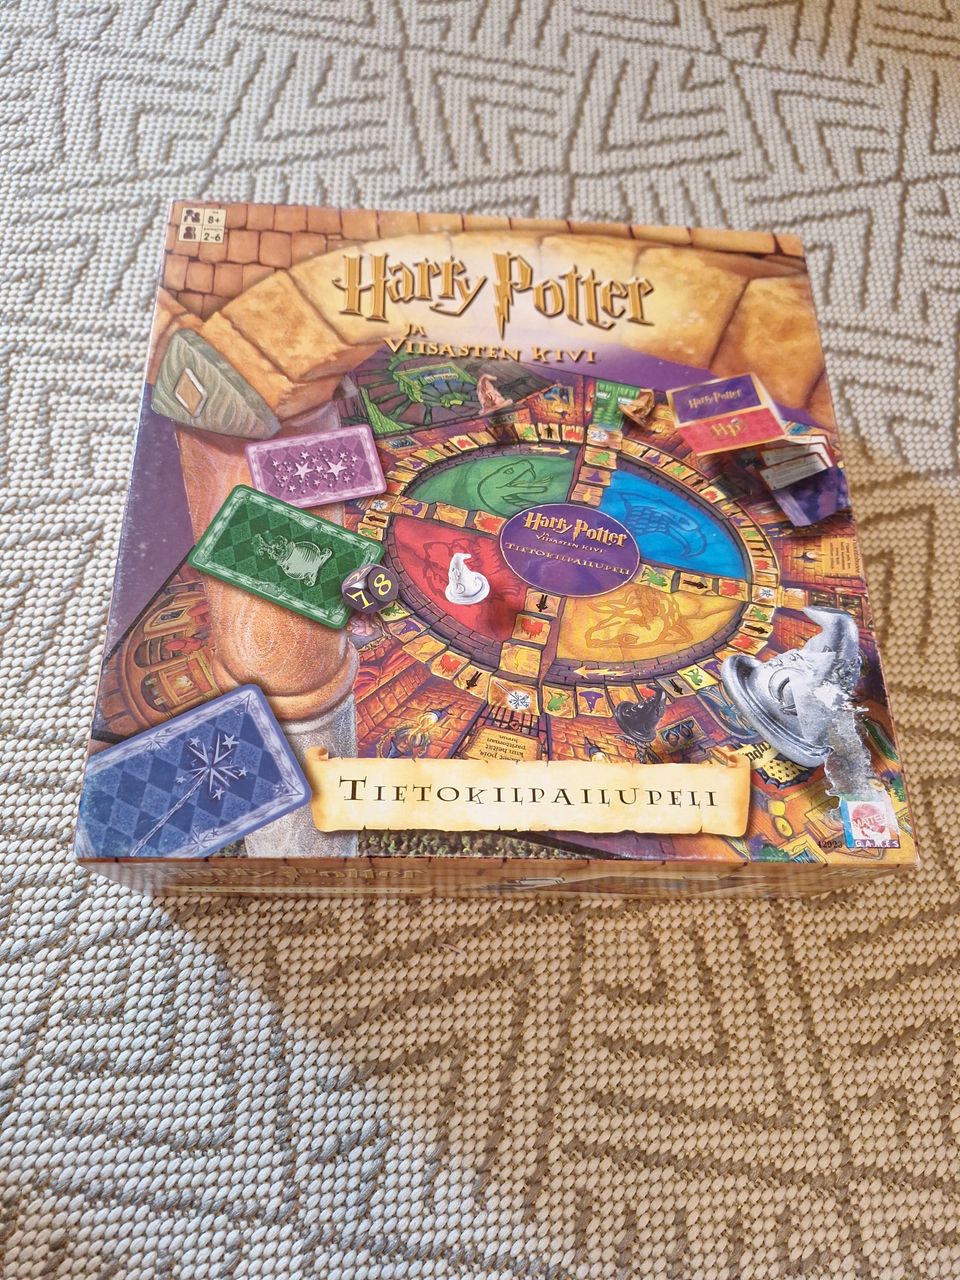 Harry Potter ja viisasten kivi tietokilpailupeli